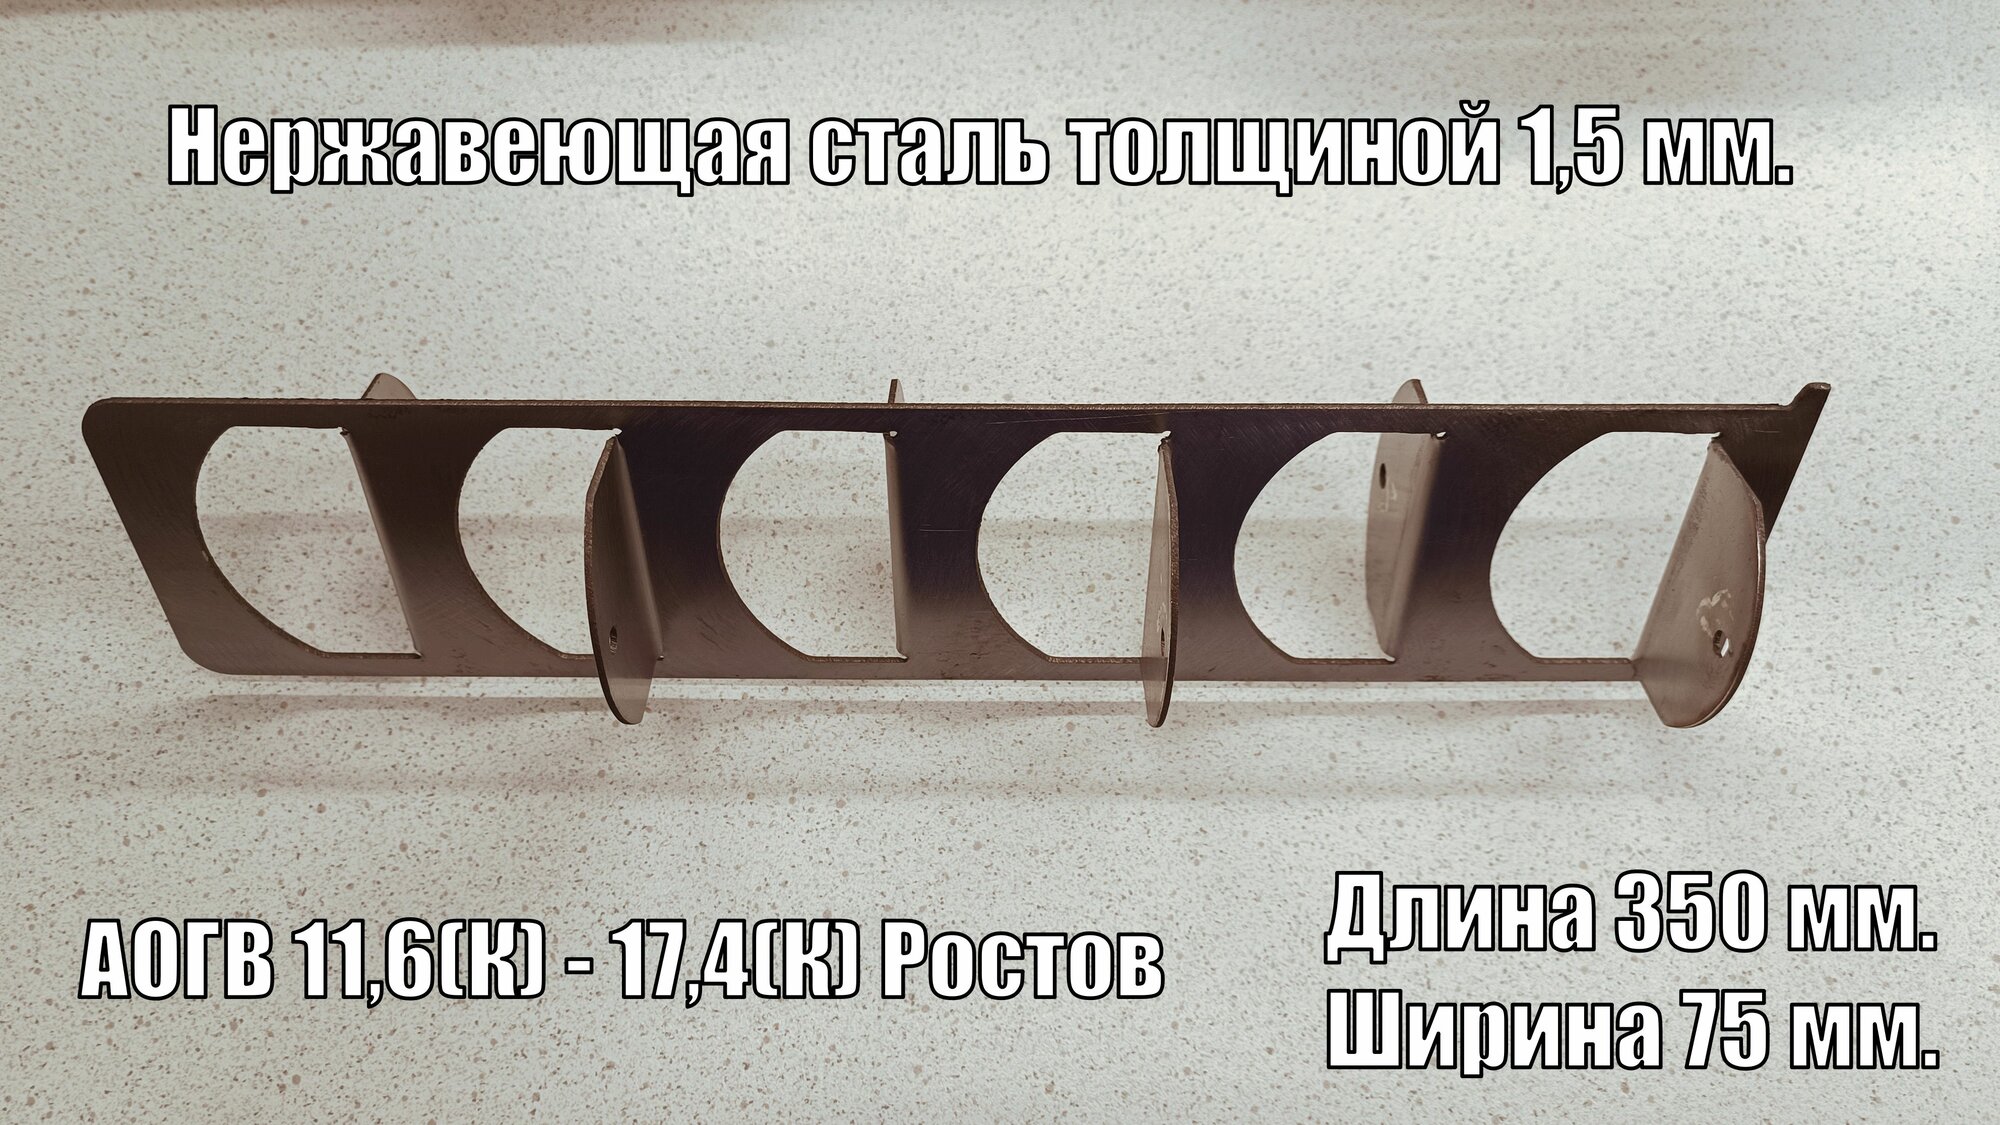 Турбулизатор из нержавейки для котла АОГВ 11.6-17.4 (Ростов) v1.